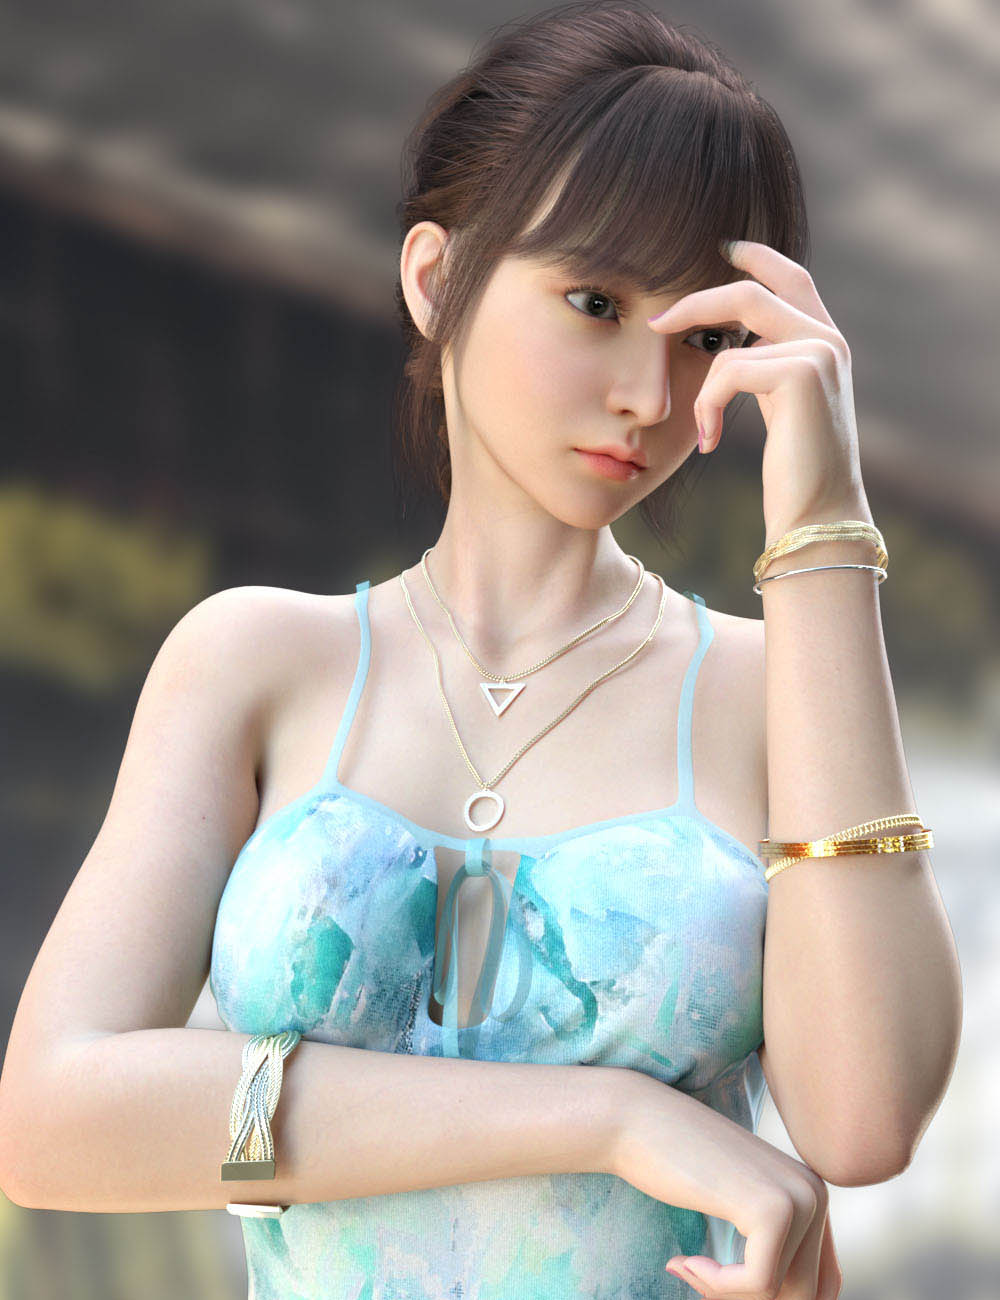 Daz高清角色3D模型 亚裔女性表情妆容模型下载